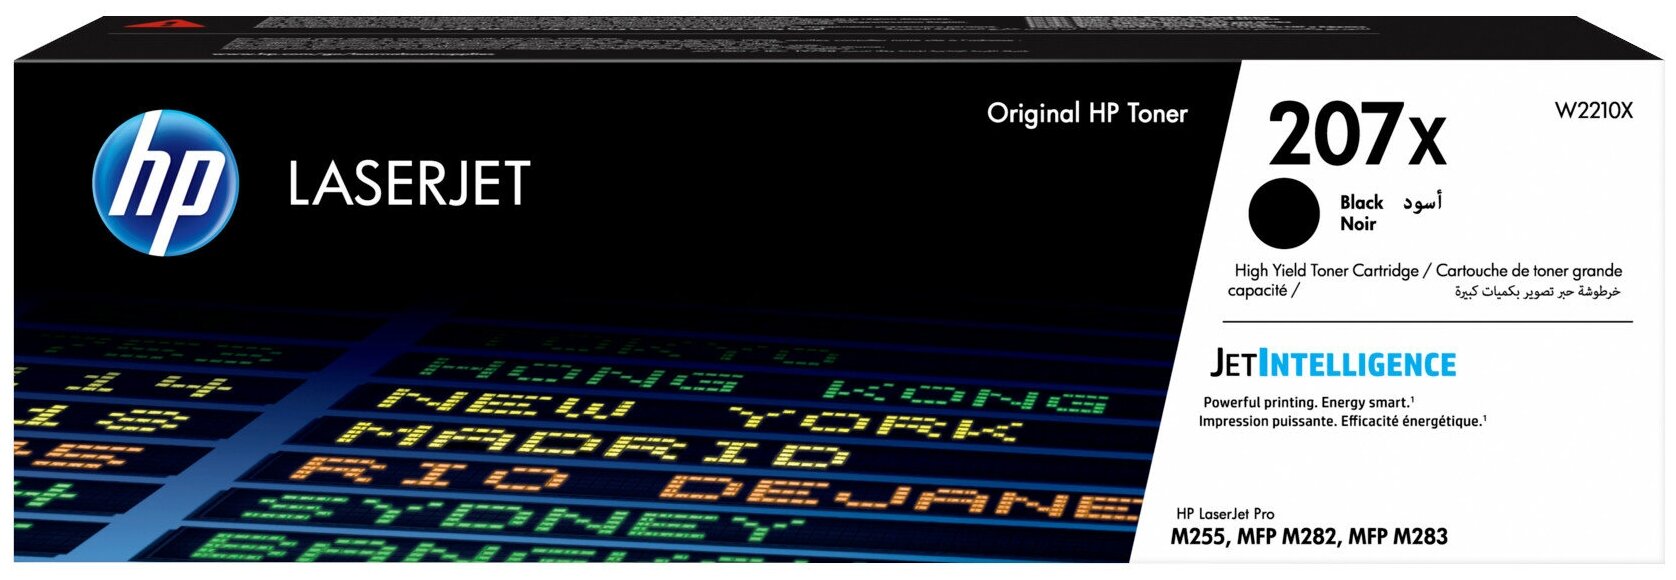 Картридж HP 207X, черный [w2210x] - фото №1